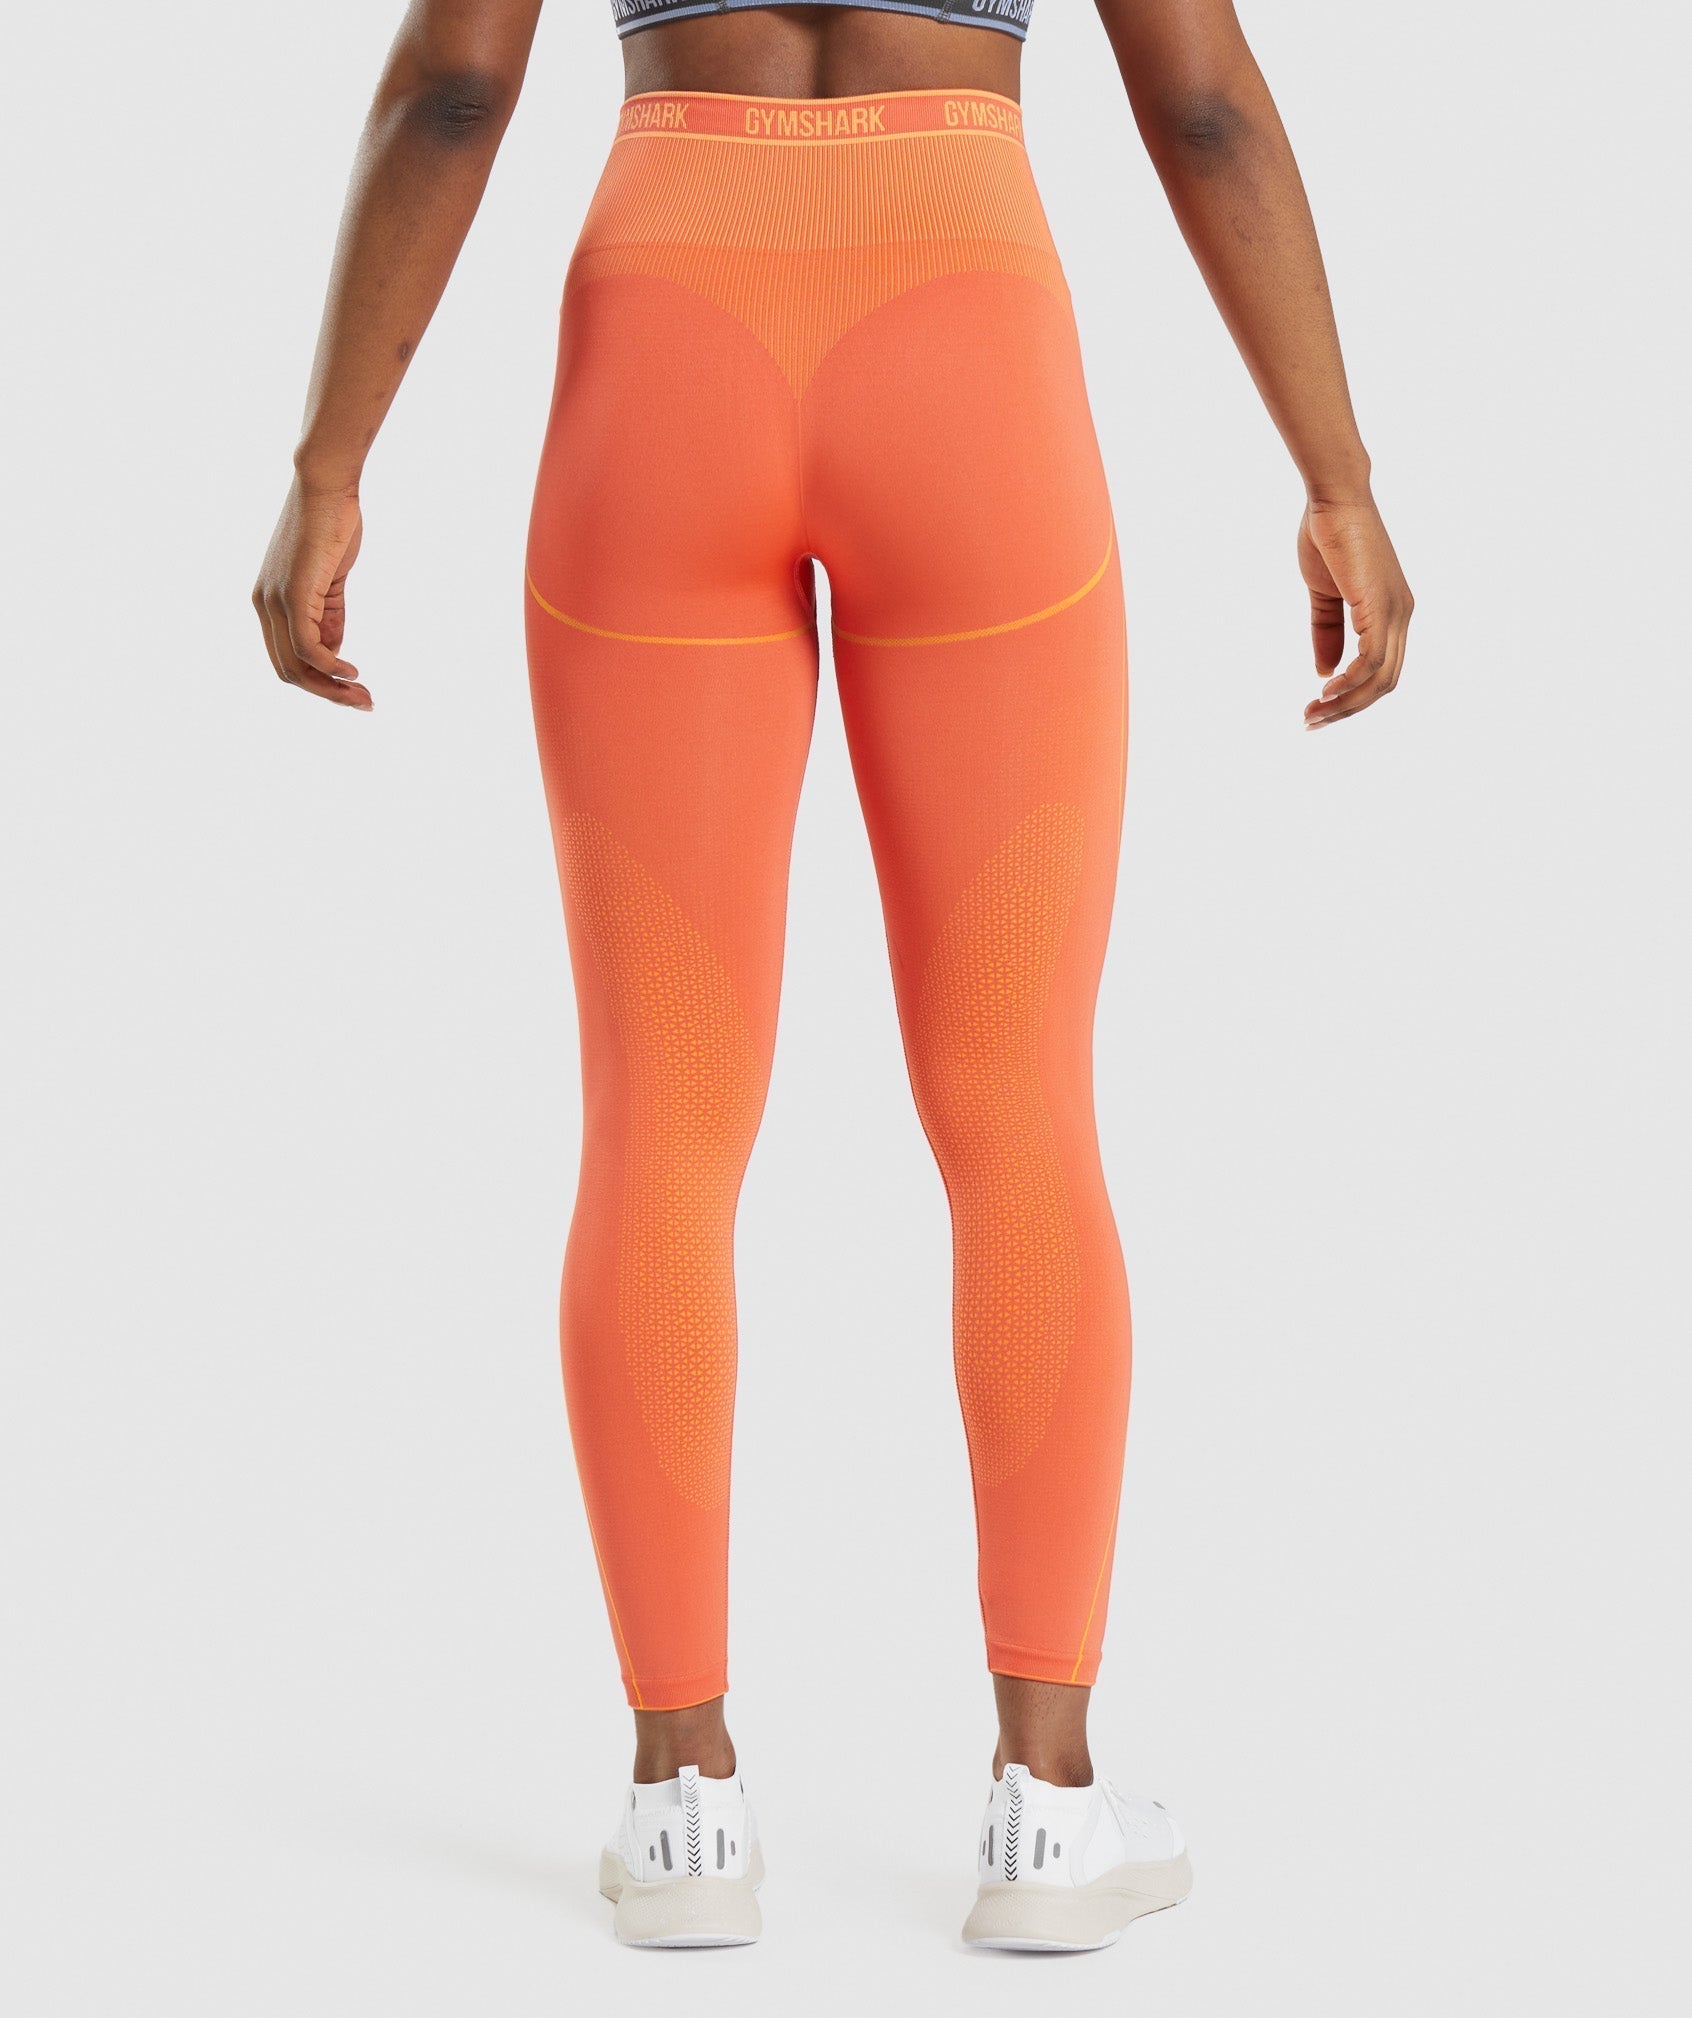 Gymshark Apex Seamless High Rise Leggings - Papaya Orange/Apricot Orange